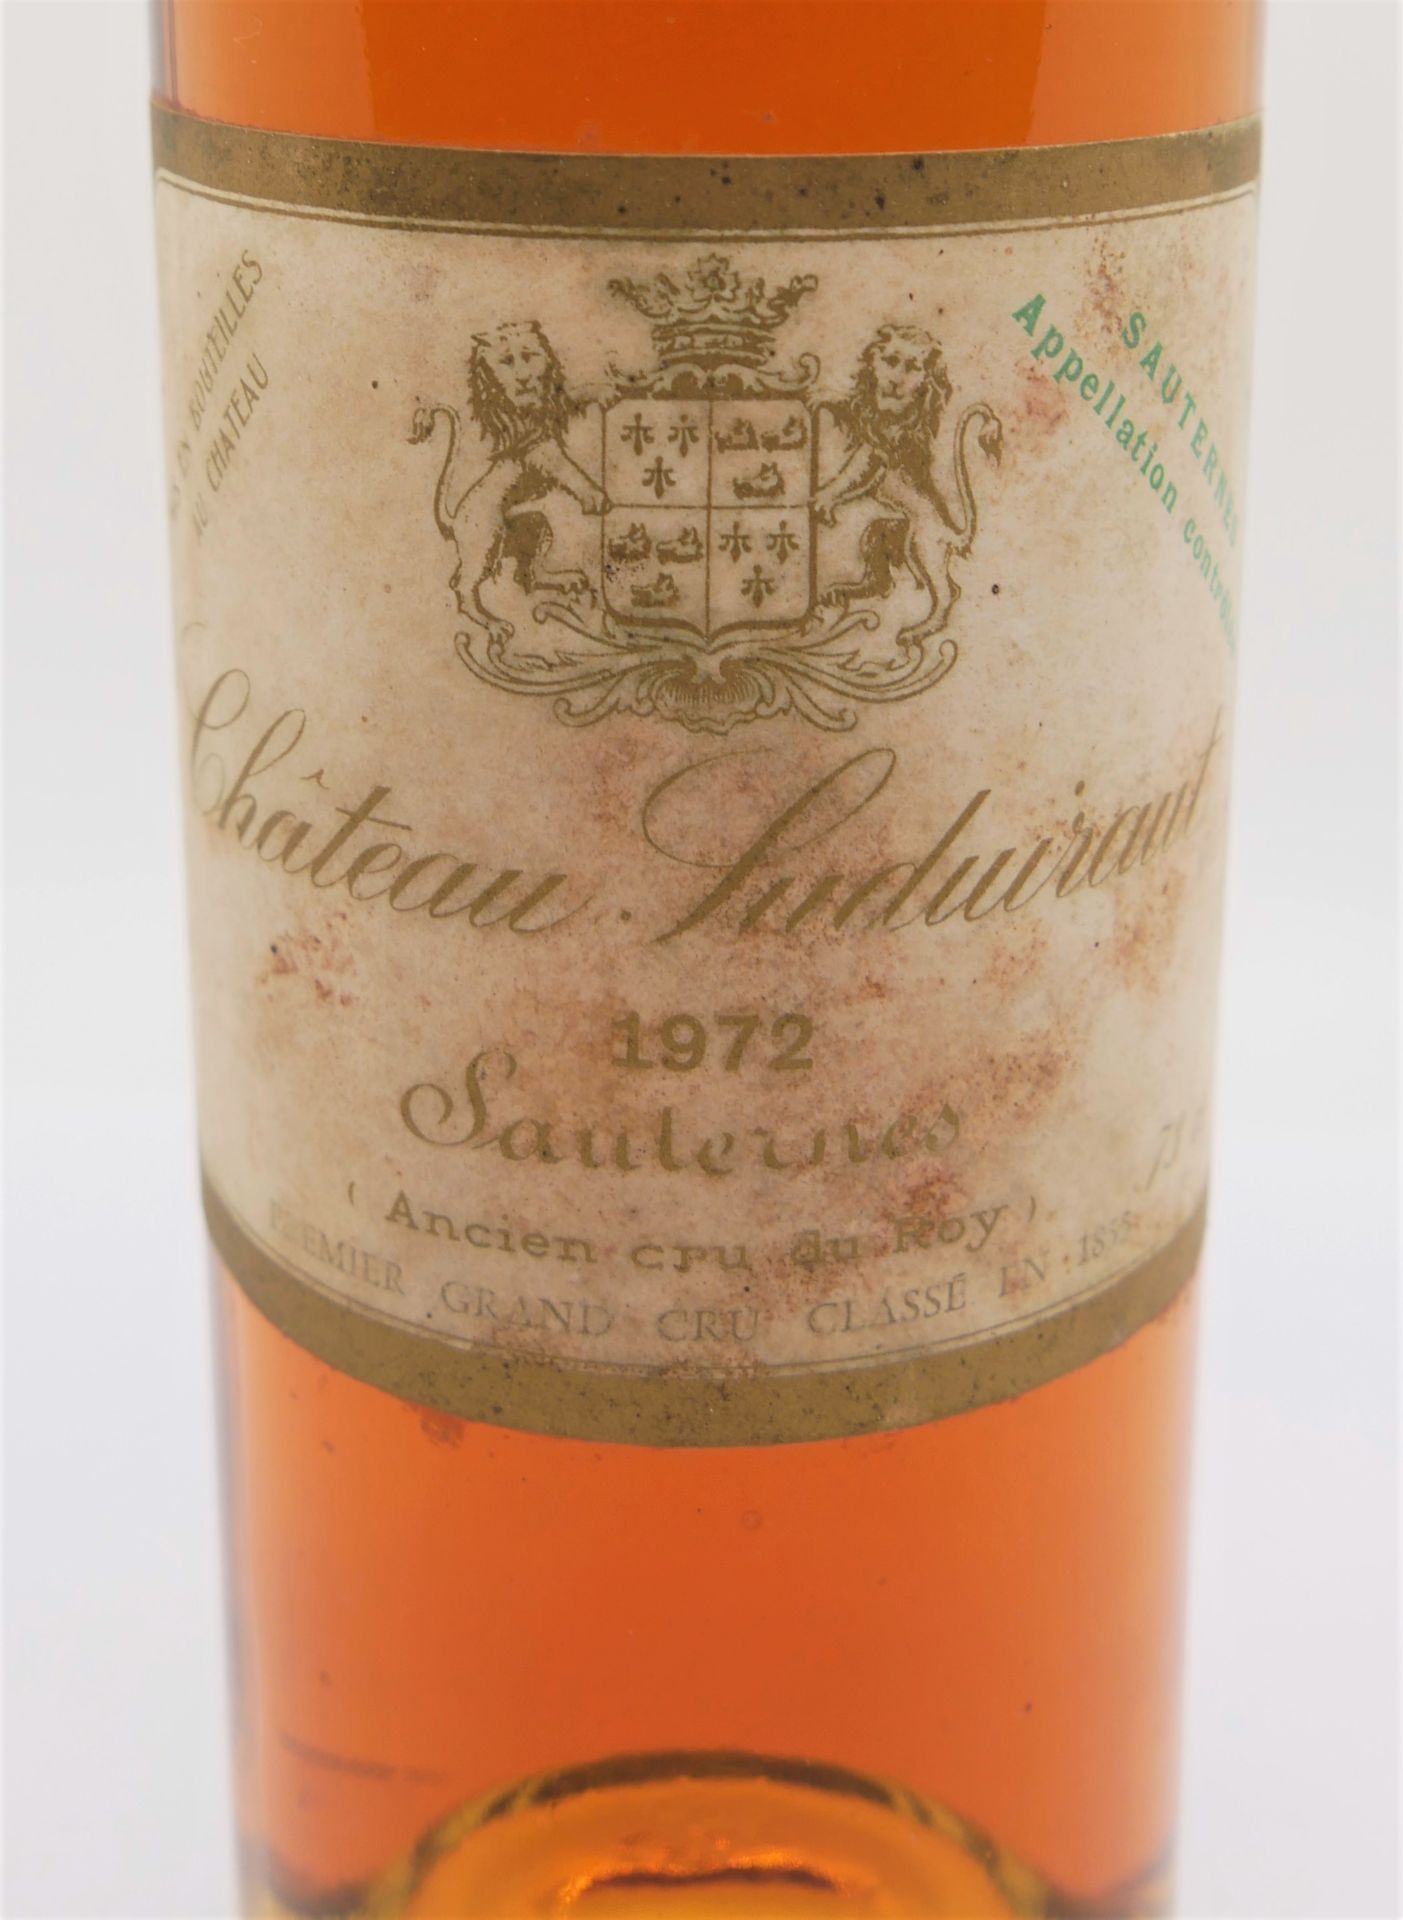 Chateau Suduiraut 1972, Sauleines Ancien cru du Roy, 0,75 l Dessertwein - Bild 2 aus 2